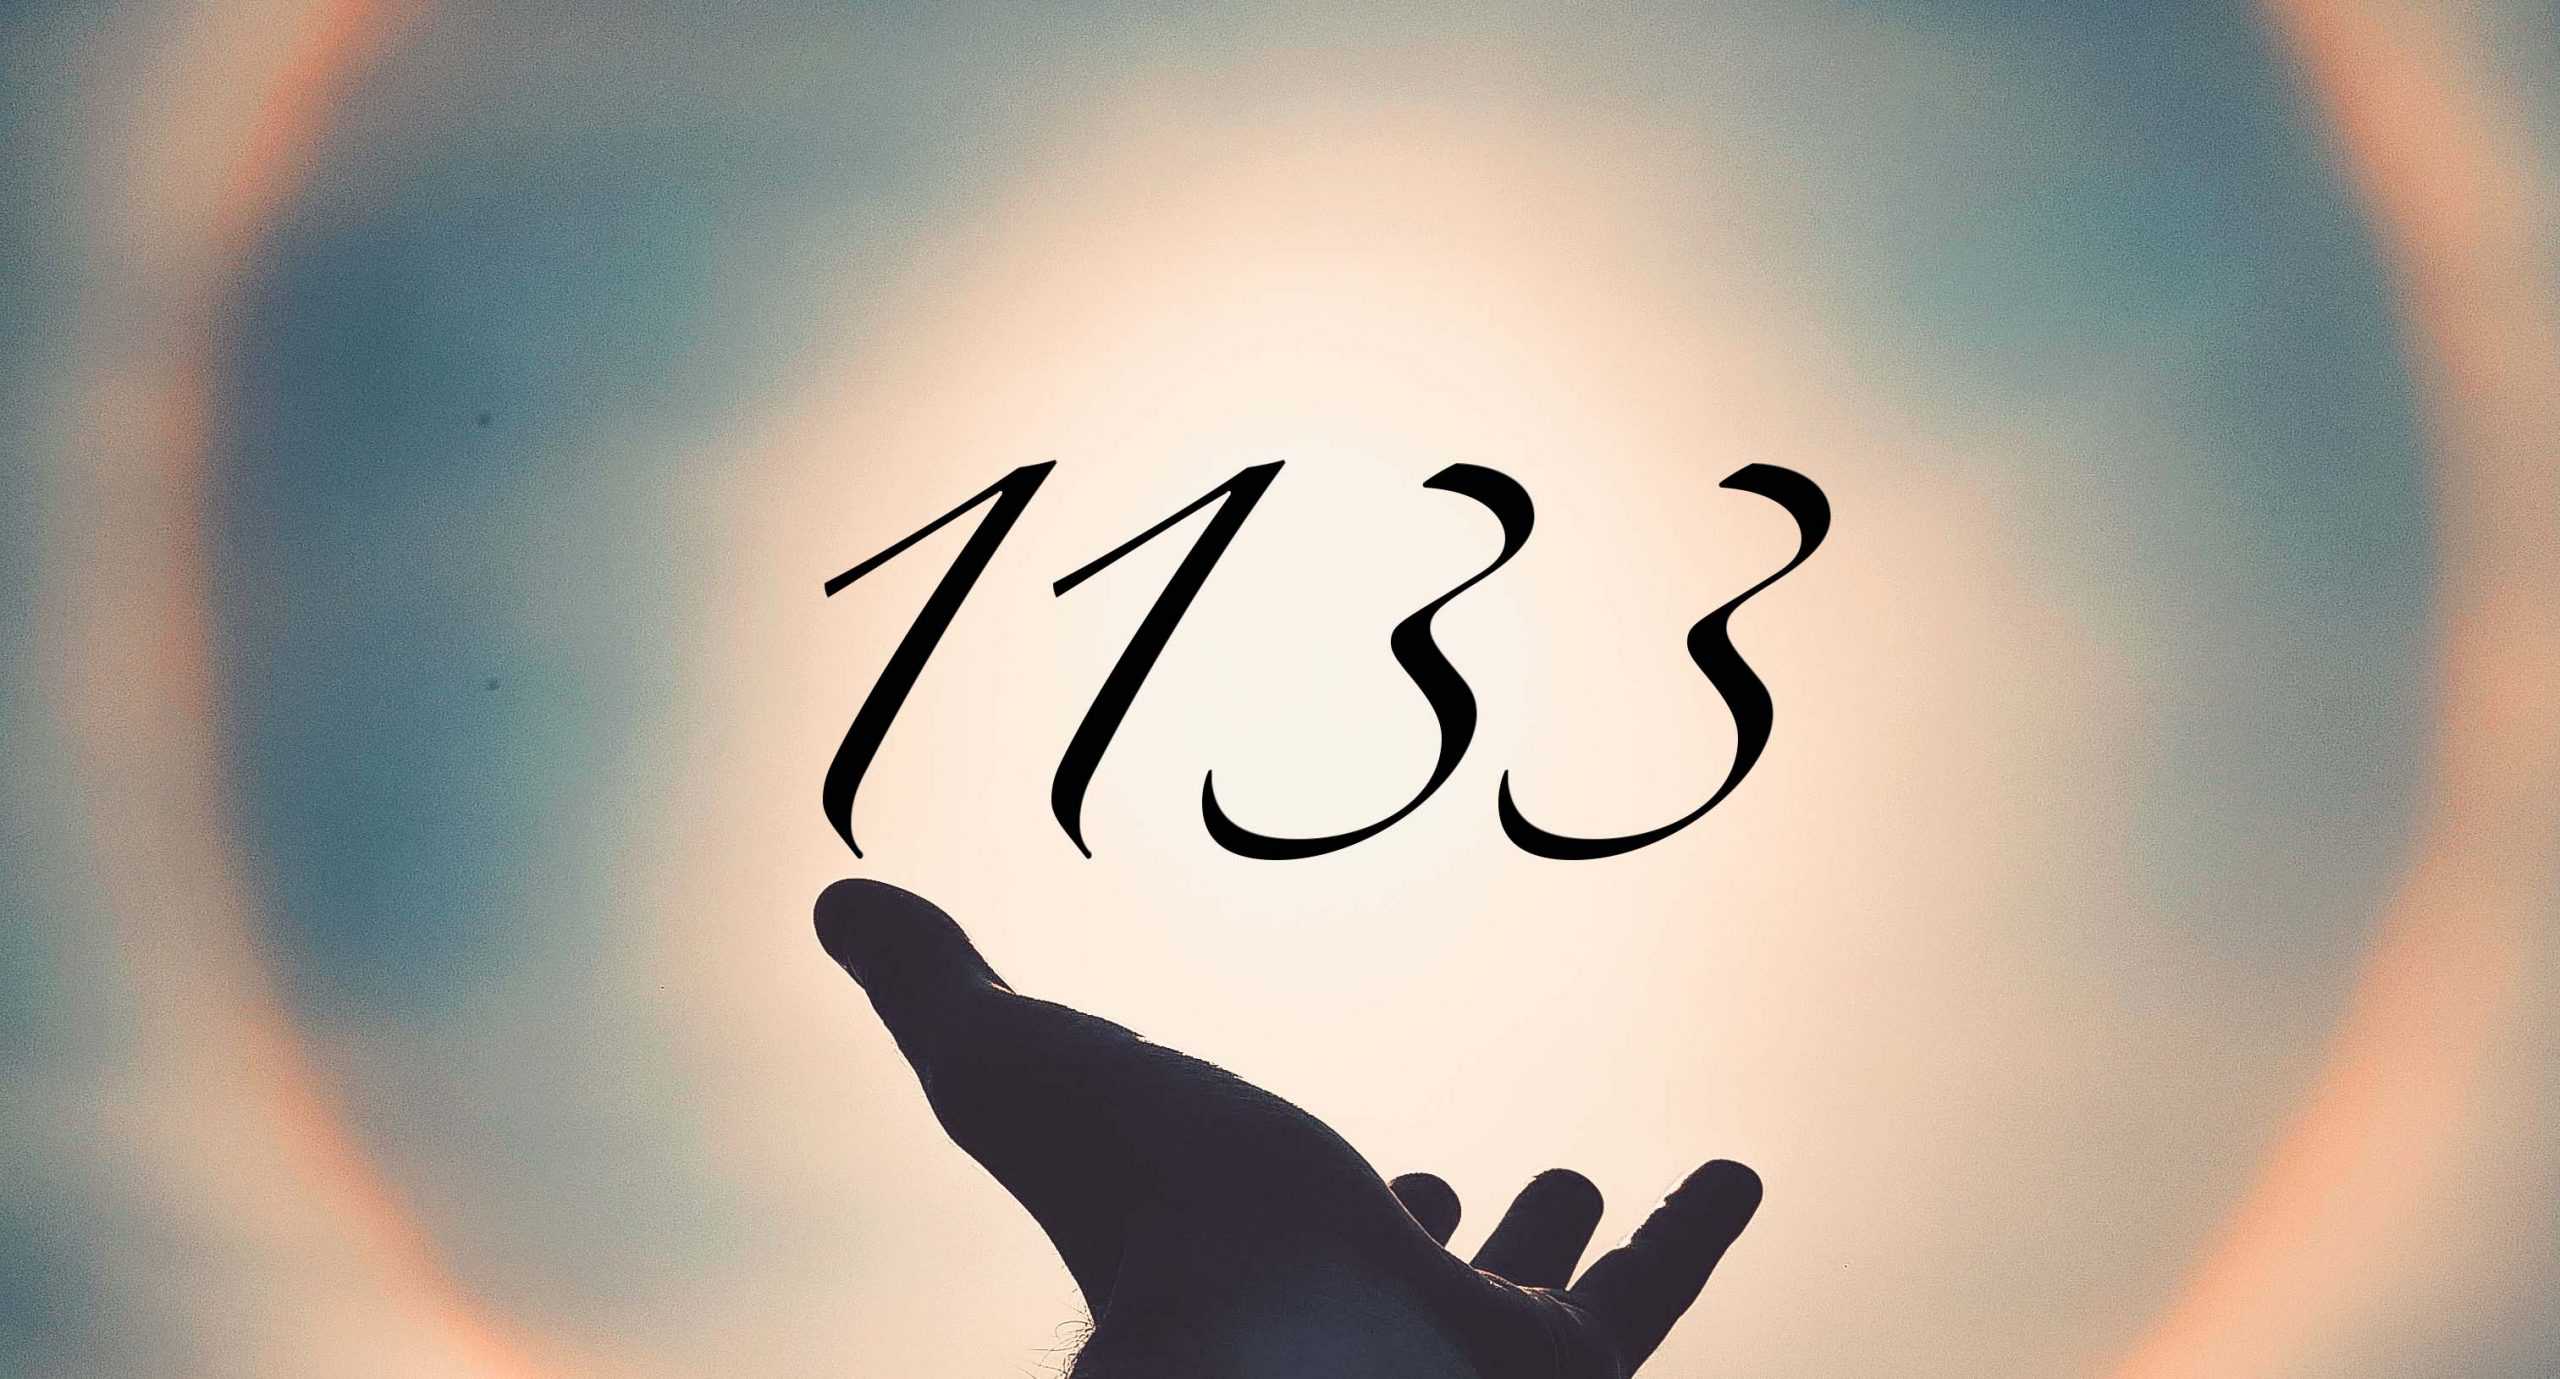 Signification du nombre 1133